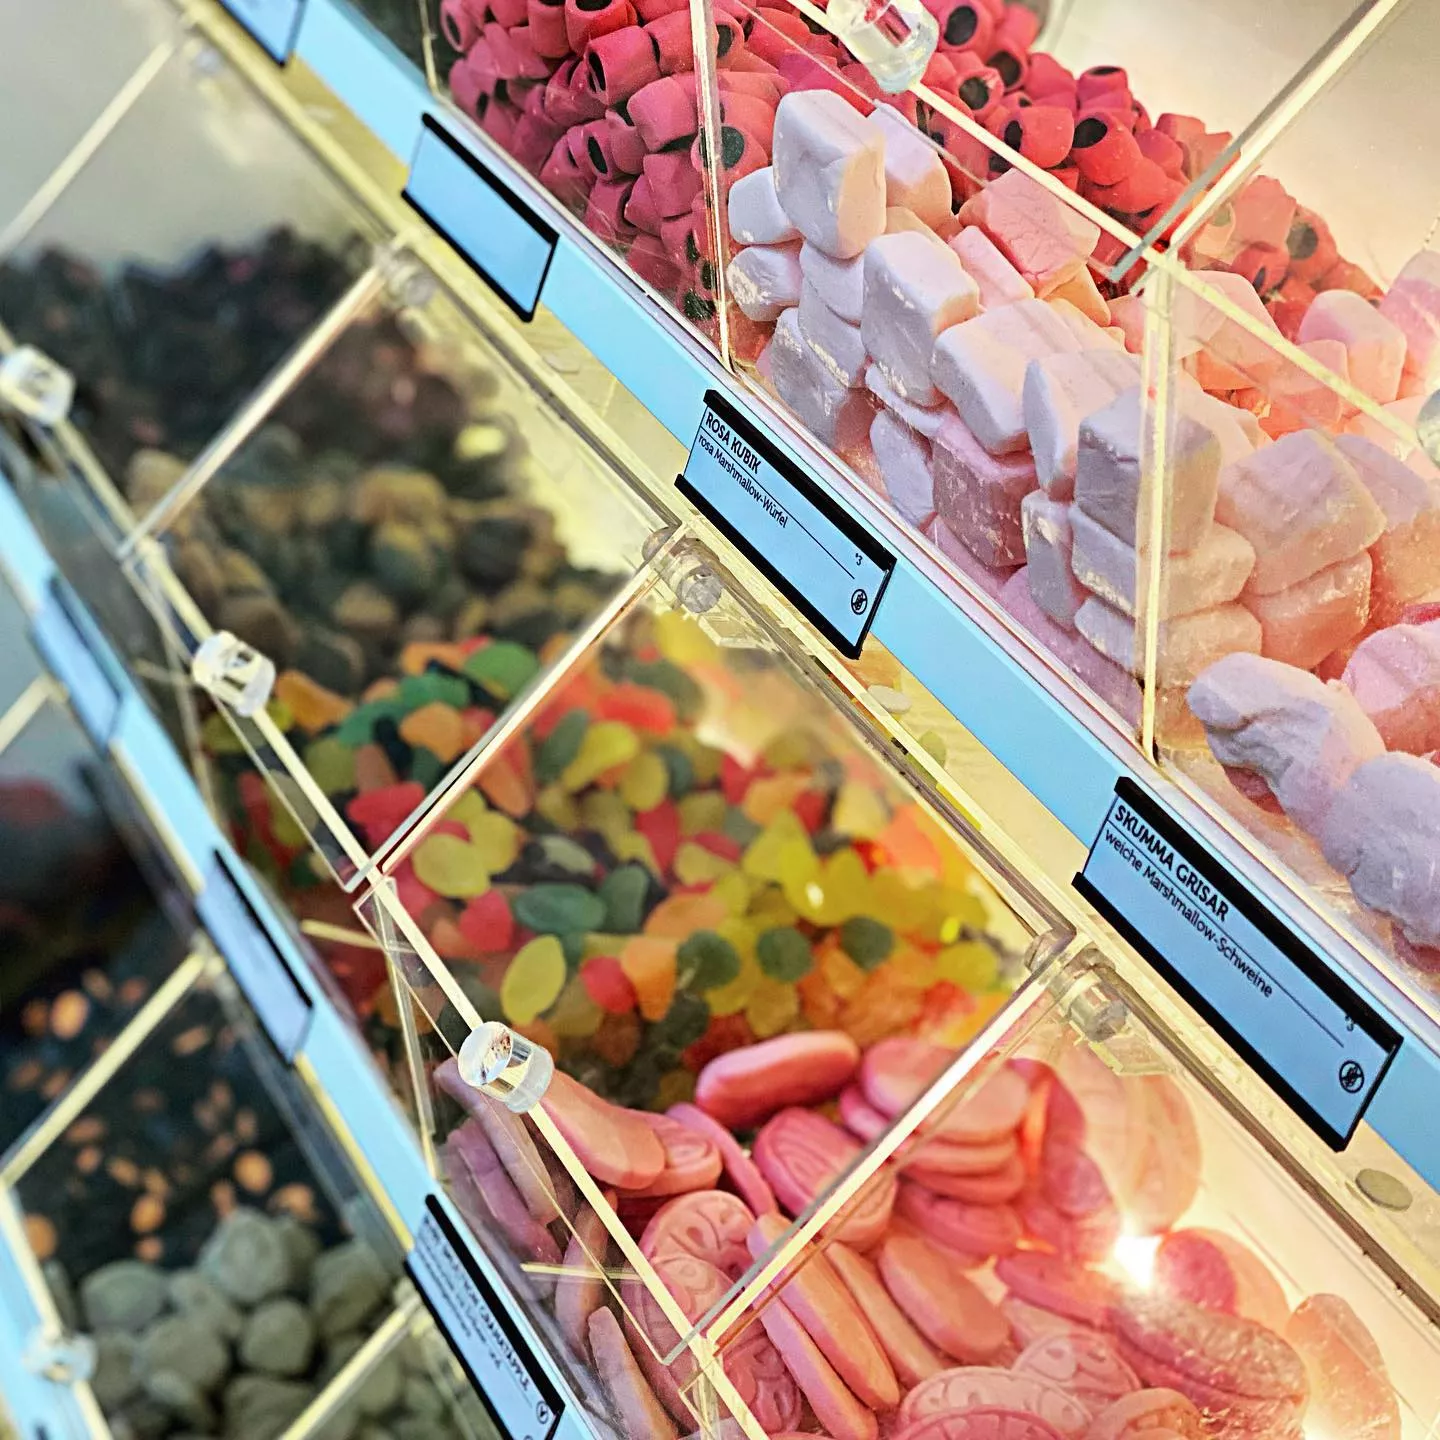 Naschhaus - Dein neuer Lieblingsladen für außergewöhnliche Süßigkeiten aus Skandinavien in Berlin-Friedrichshain 2